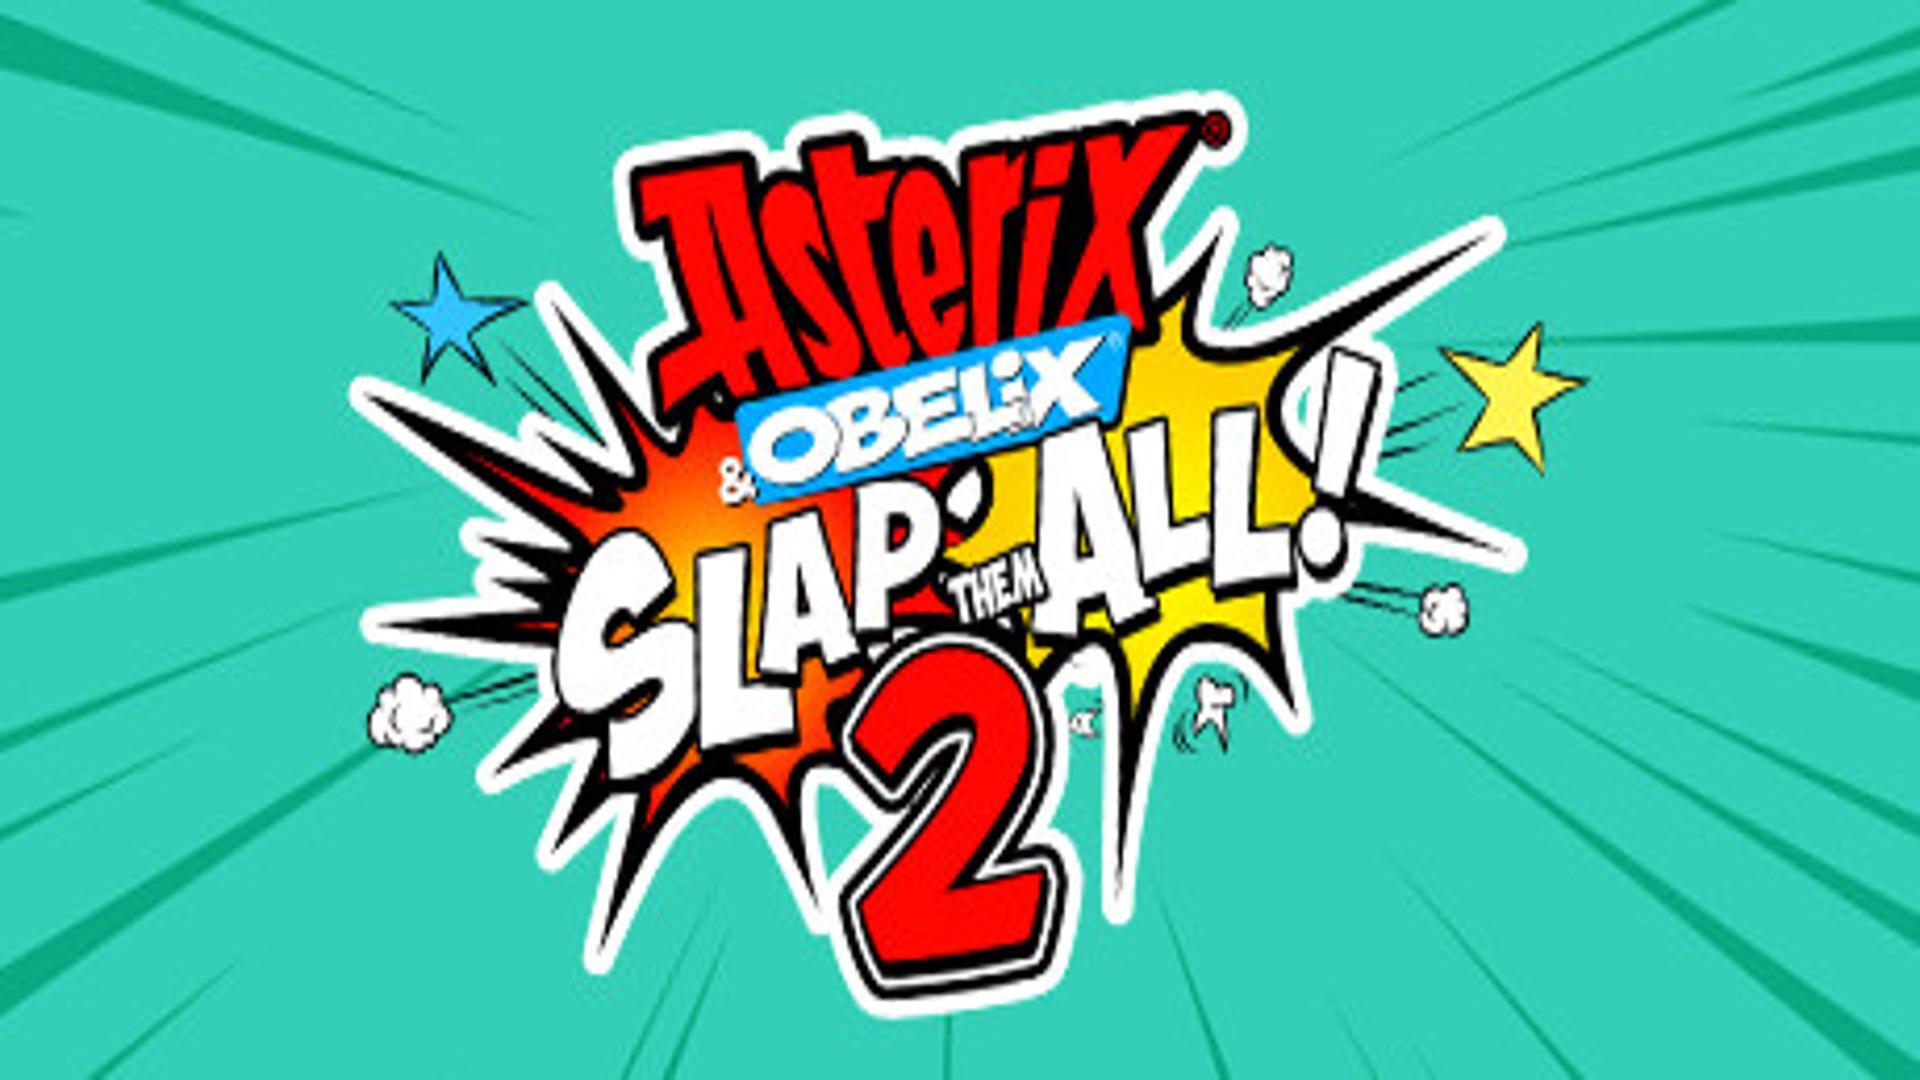 Asterix & Obelix Slap Them All! 2- Free Download (Build 12653990)